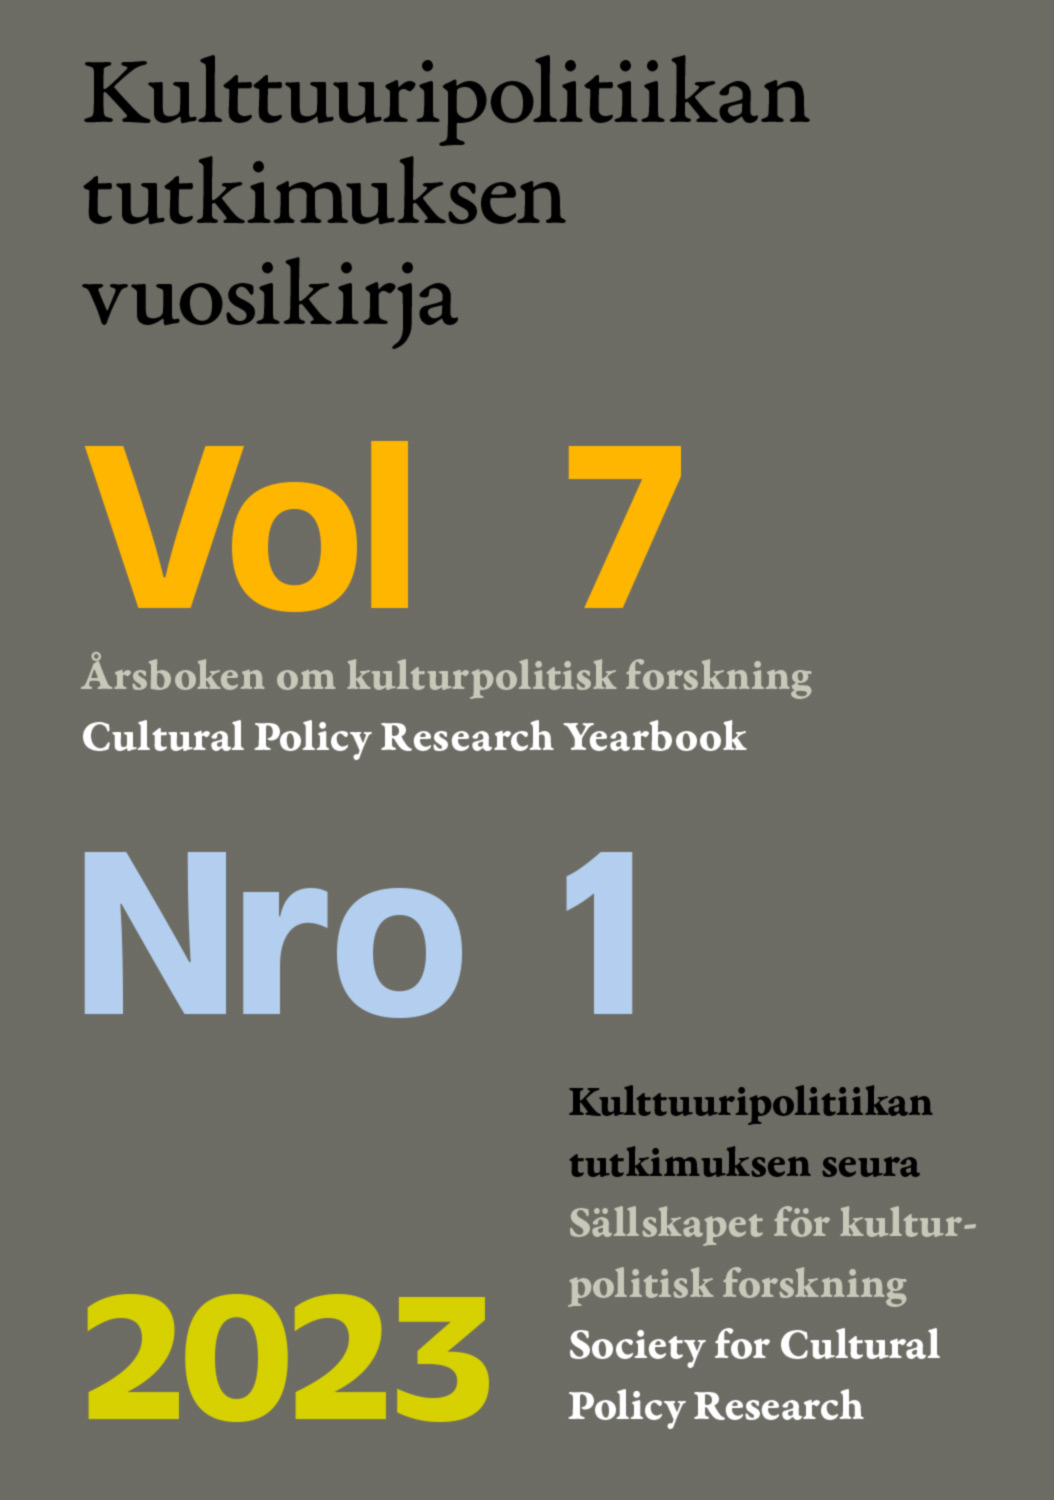 					Näytä Vol 7 Nro 1 (2023): Kulttuuripolitiikan tutkimuksen vuosikirja 2023
				